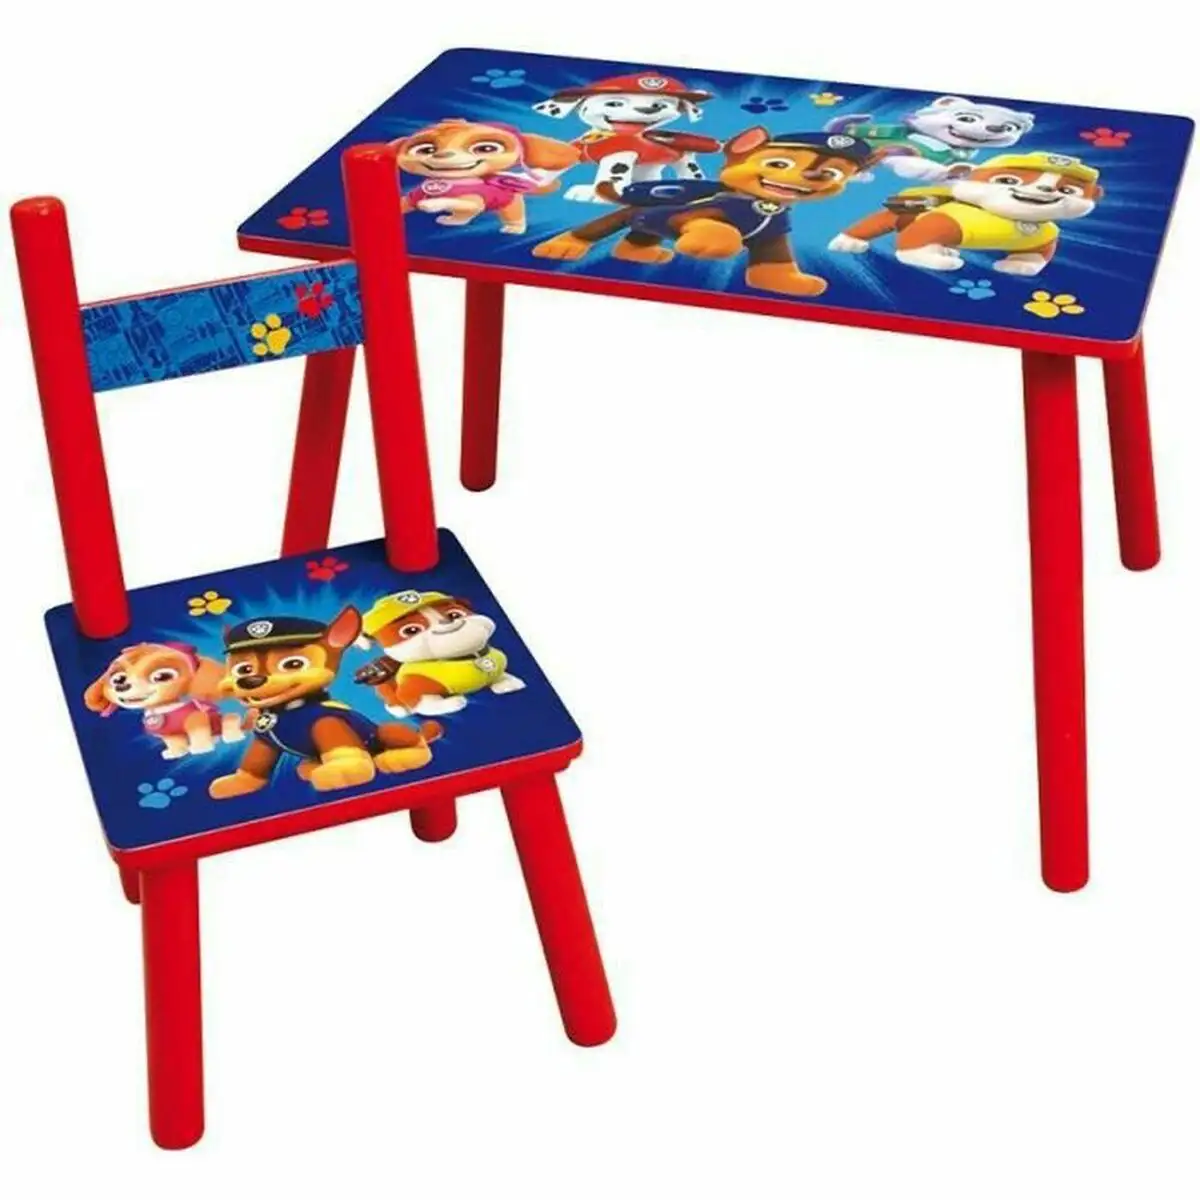 Set de table et chaises pour enfants fun house the paw patrol_7205. DIAYTAR SENEGAL - Votre Destination pour un Shopping Inégalé. Naviguez à travers notre sélection minutieuse pour trouver des produits qui répondent à tous vos besoins.